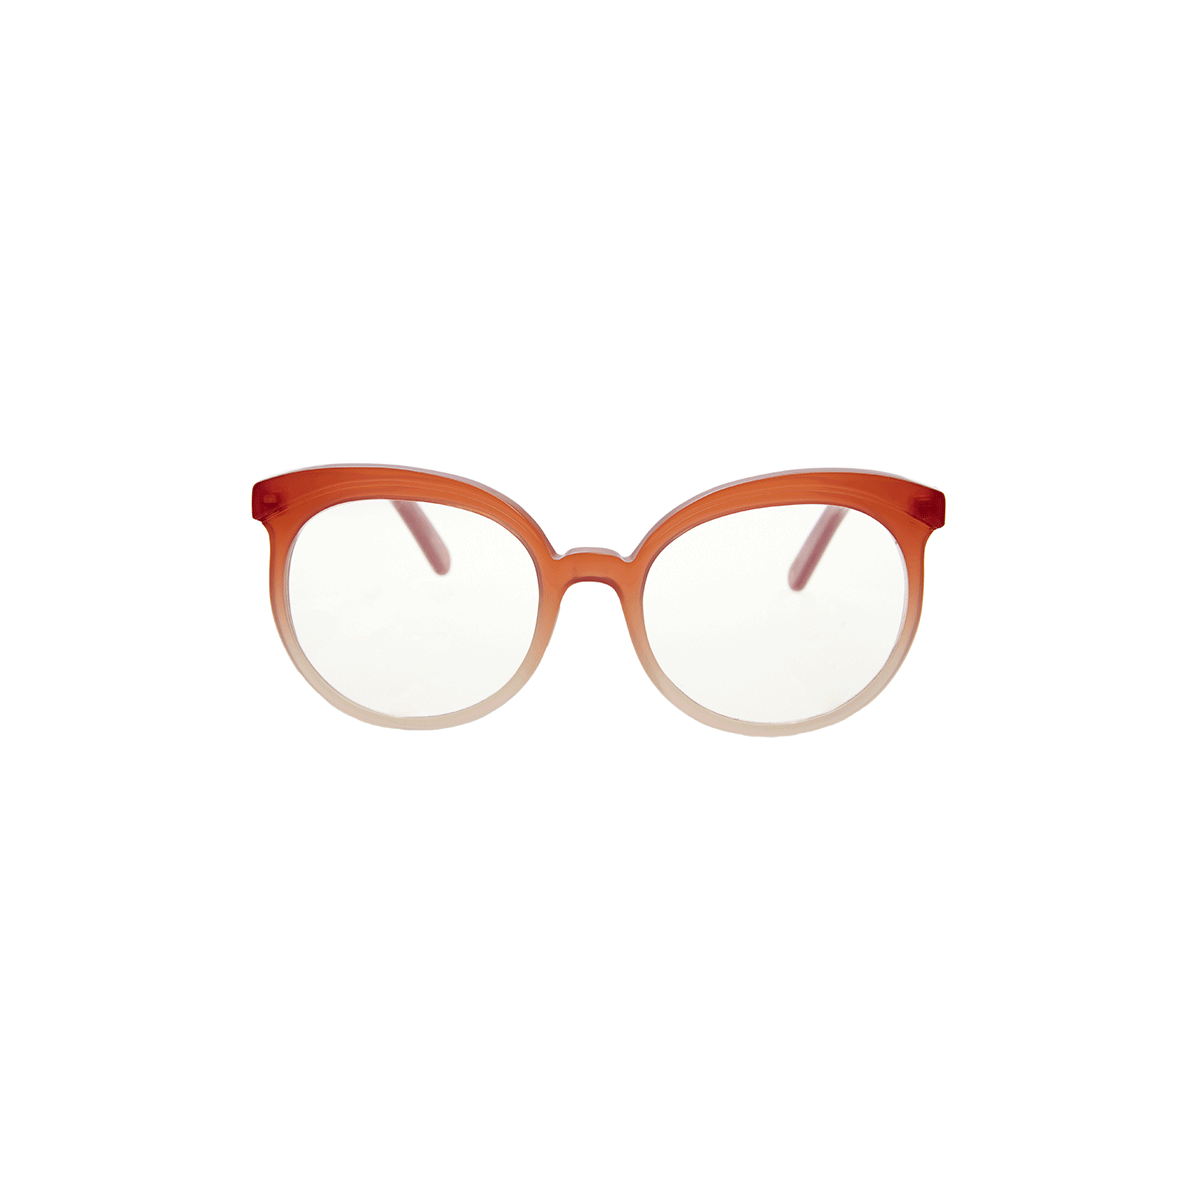 Glasses Frames OA IX 05